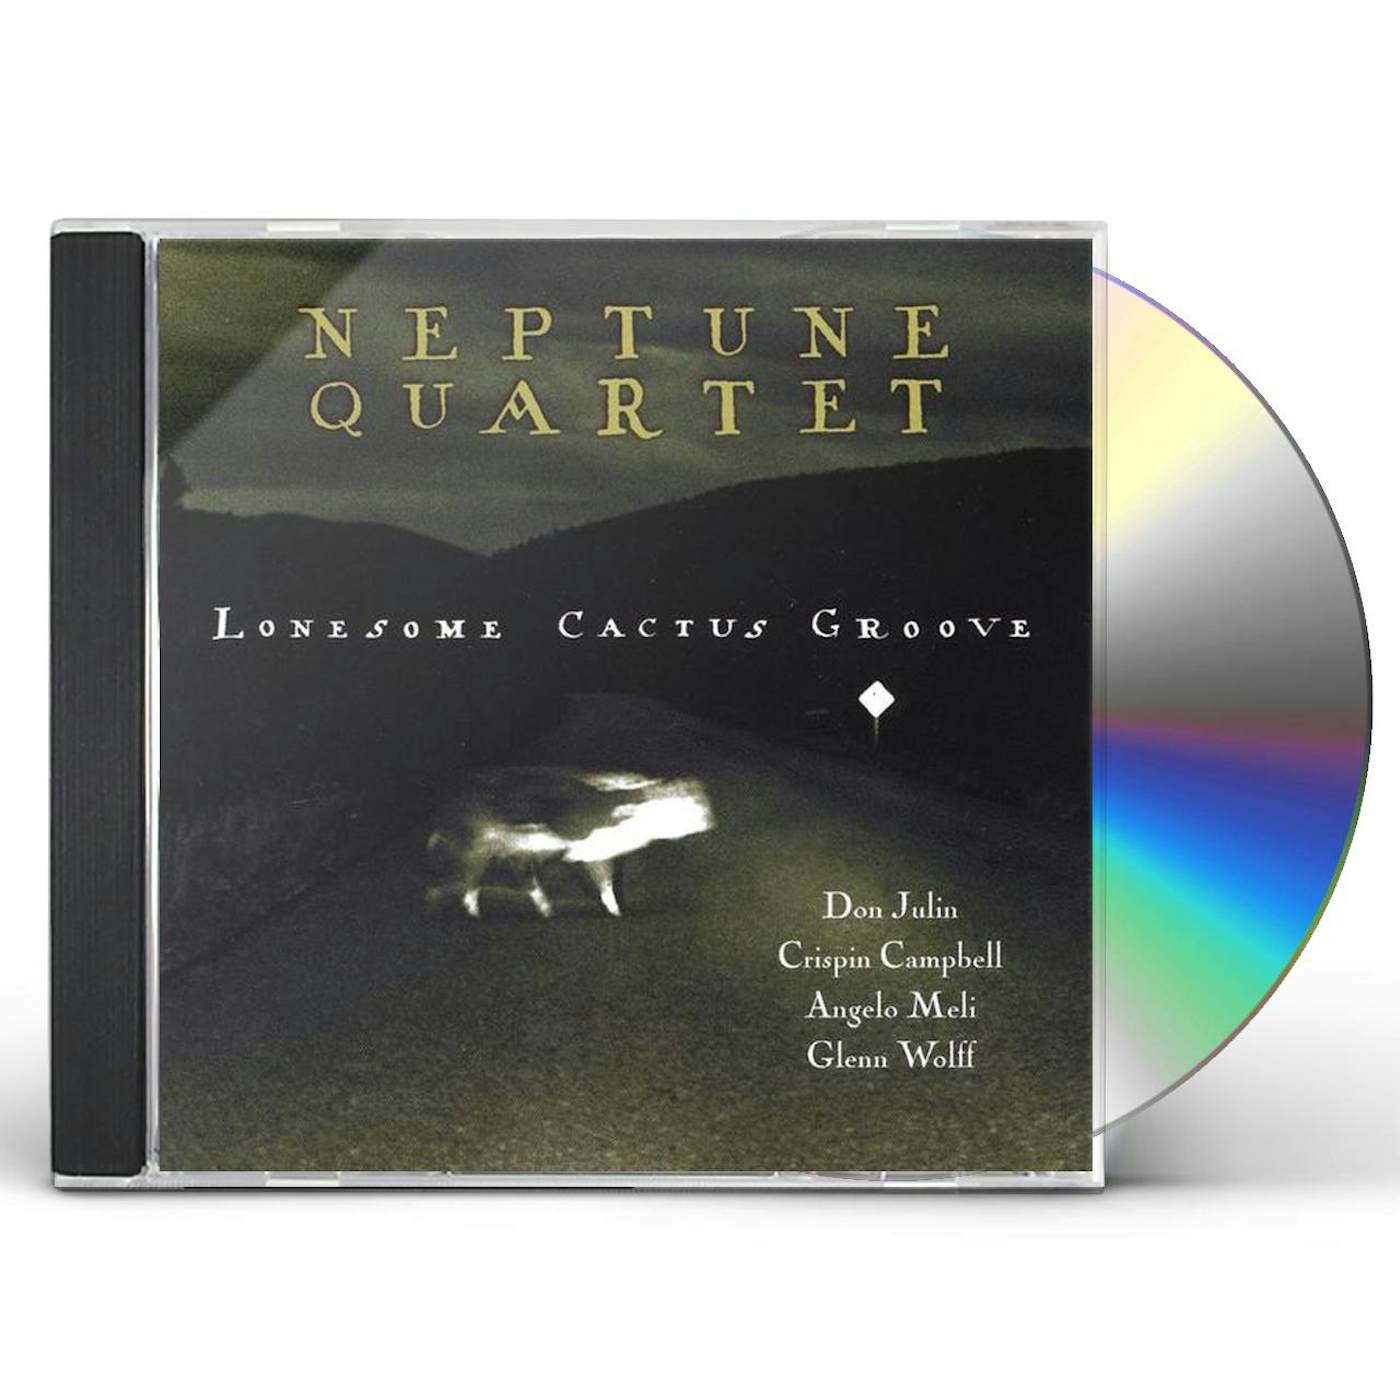 The Neptune Quartet LONESOME CACTUS GROOVE CD